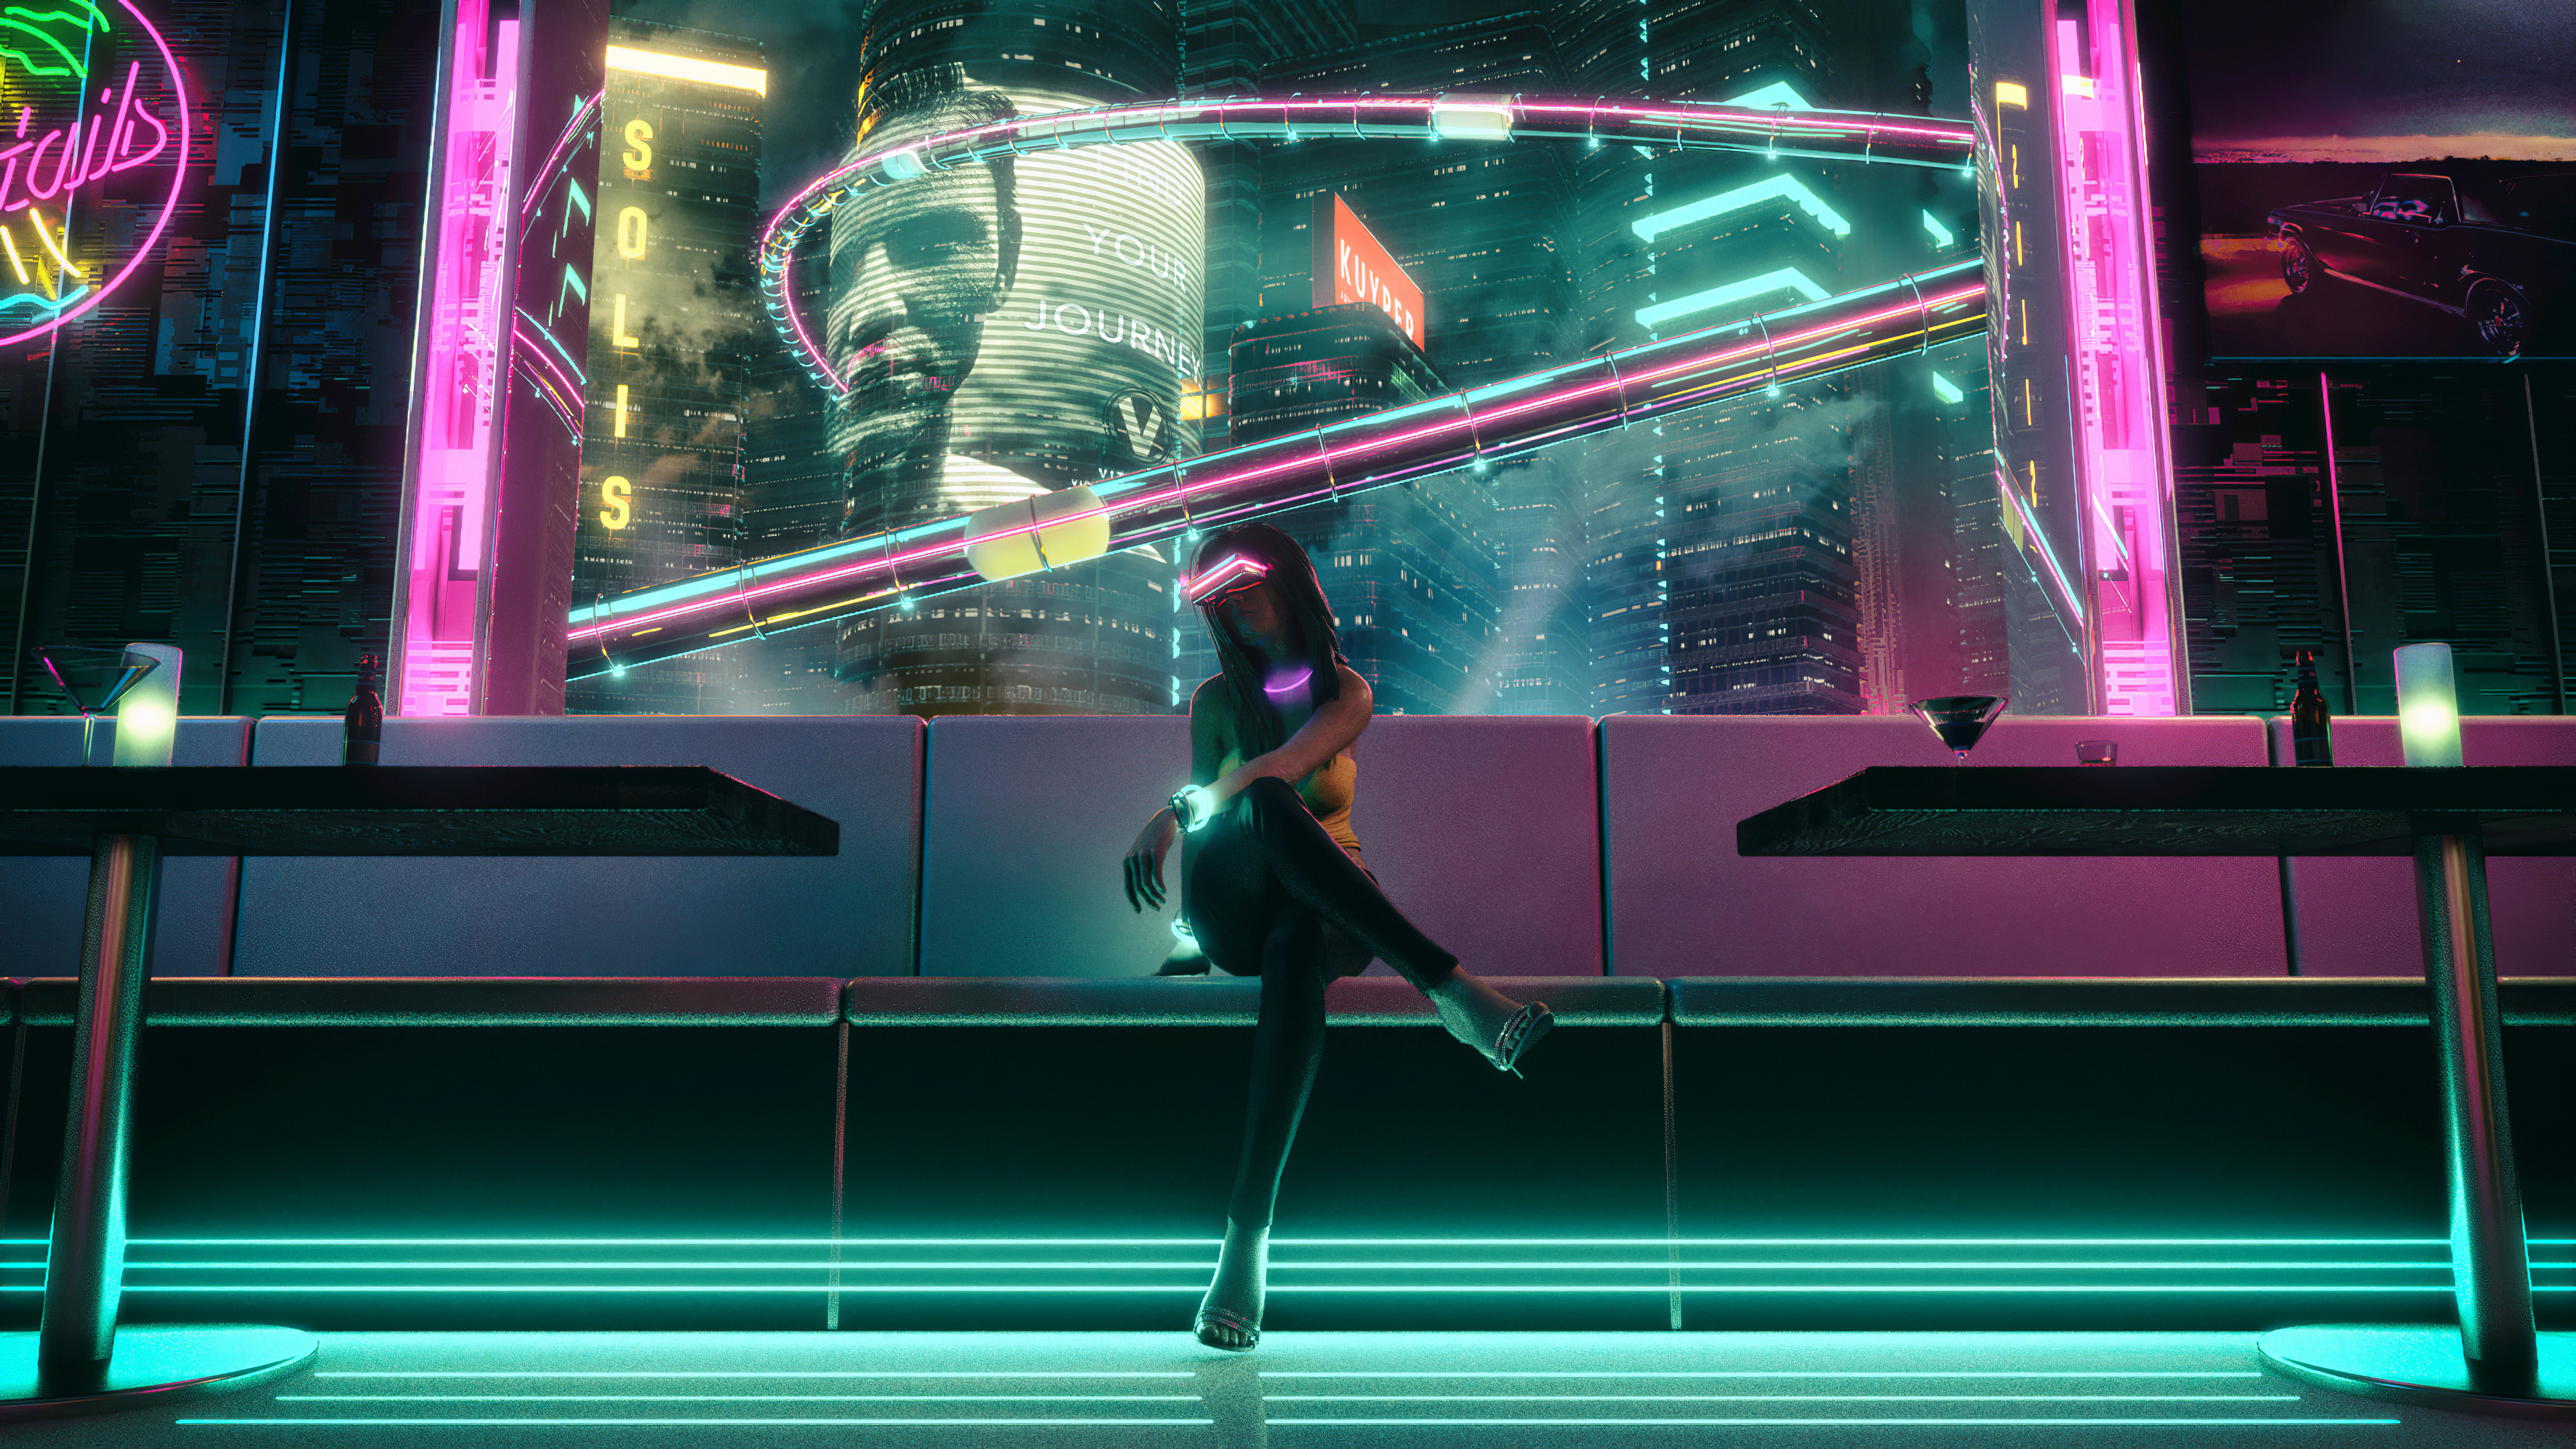 Download mobile wallpaper Cyberpunk, Sci Fi, Futuristic for free.